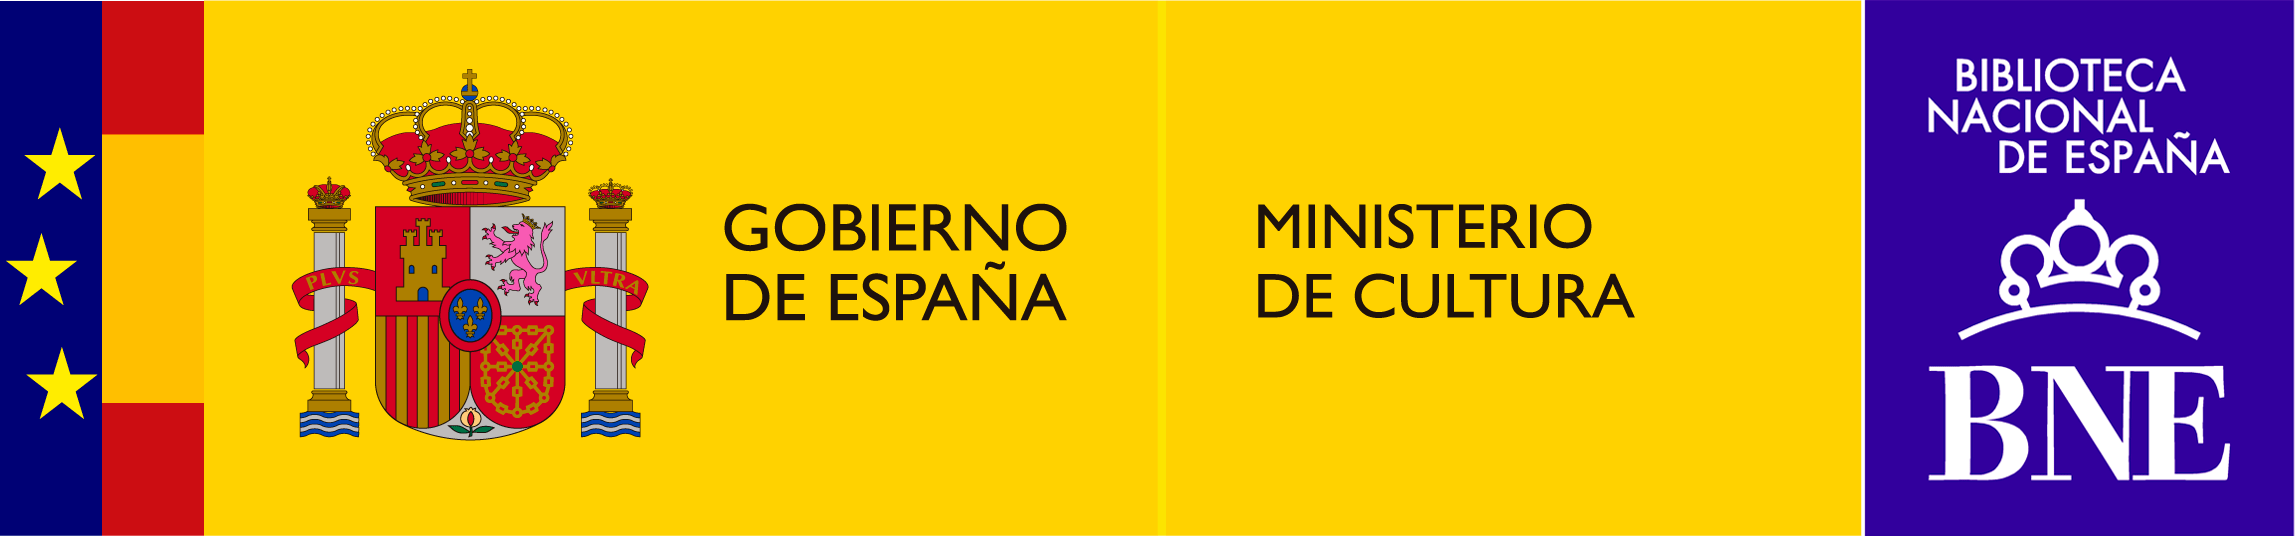 Gobierno de España. Ministerio de Cultura. Biblioteca Nacional de España